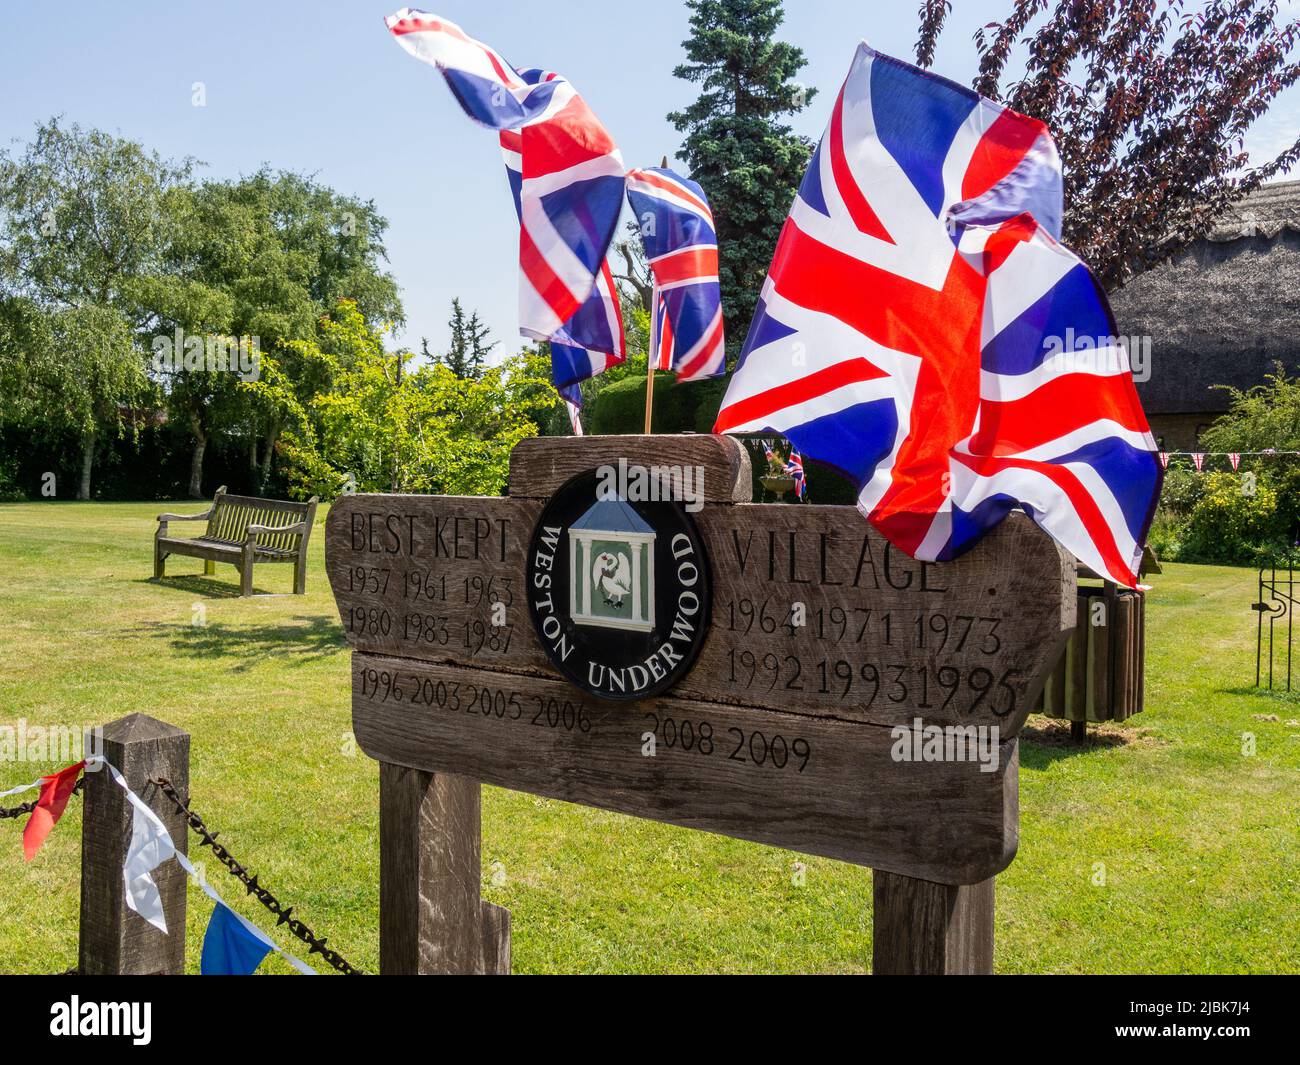 Holzschild für das Dorf Weston Underwood, Buckinghamshire, Großbritannien; geschmückt mit Union Jack Flaggen zur Feier der Platinum Jublee 2022 Stockfoto